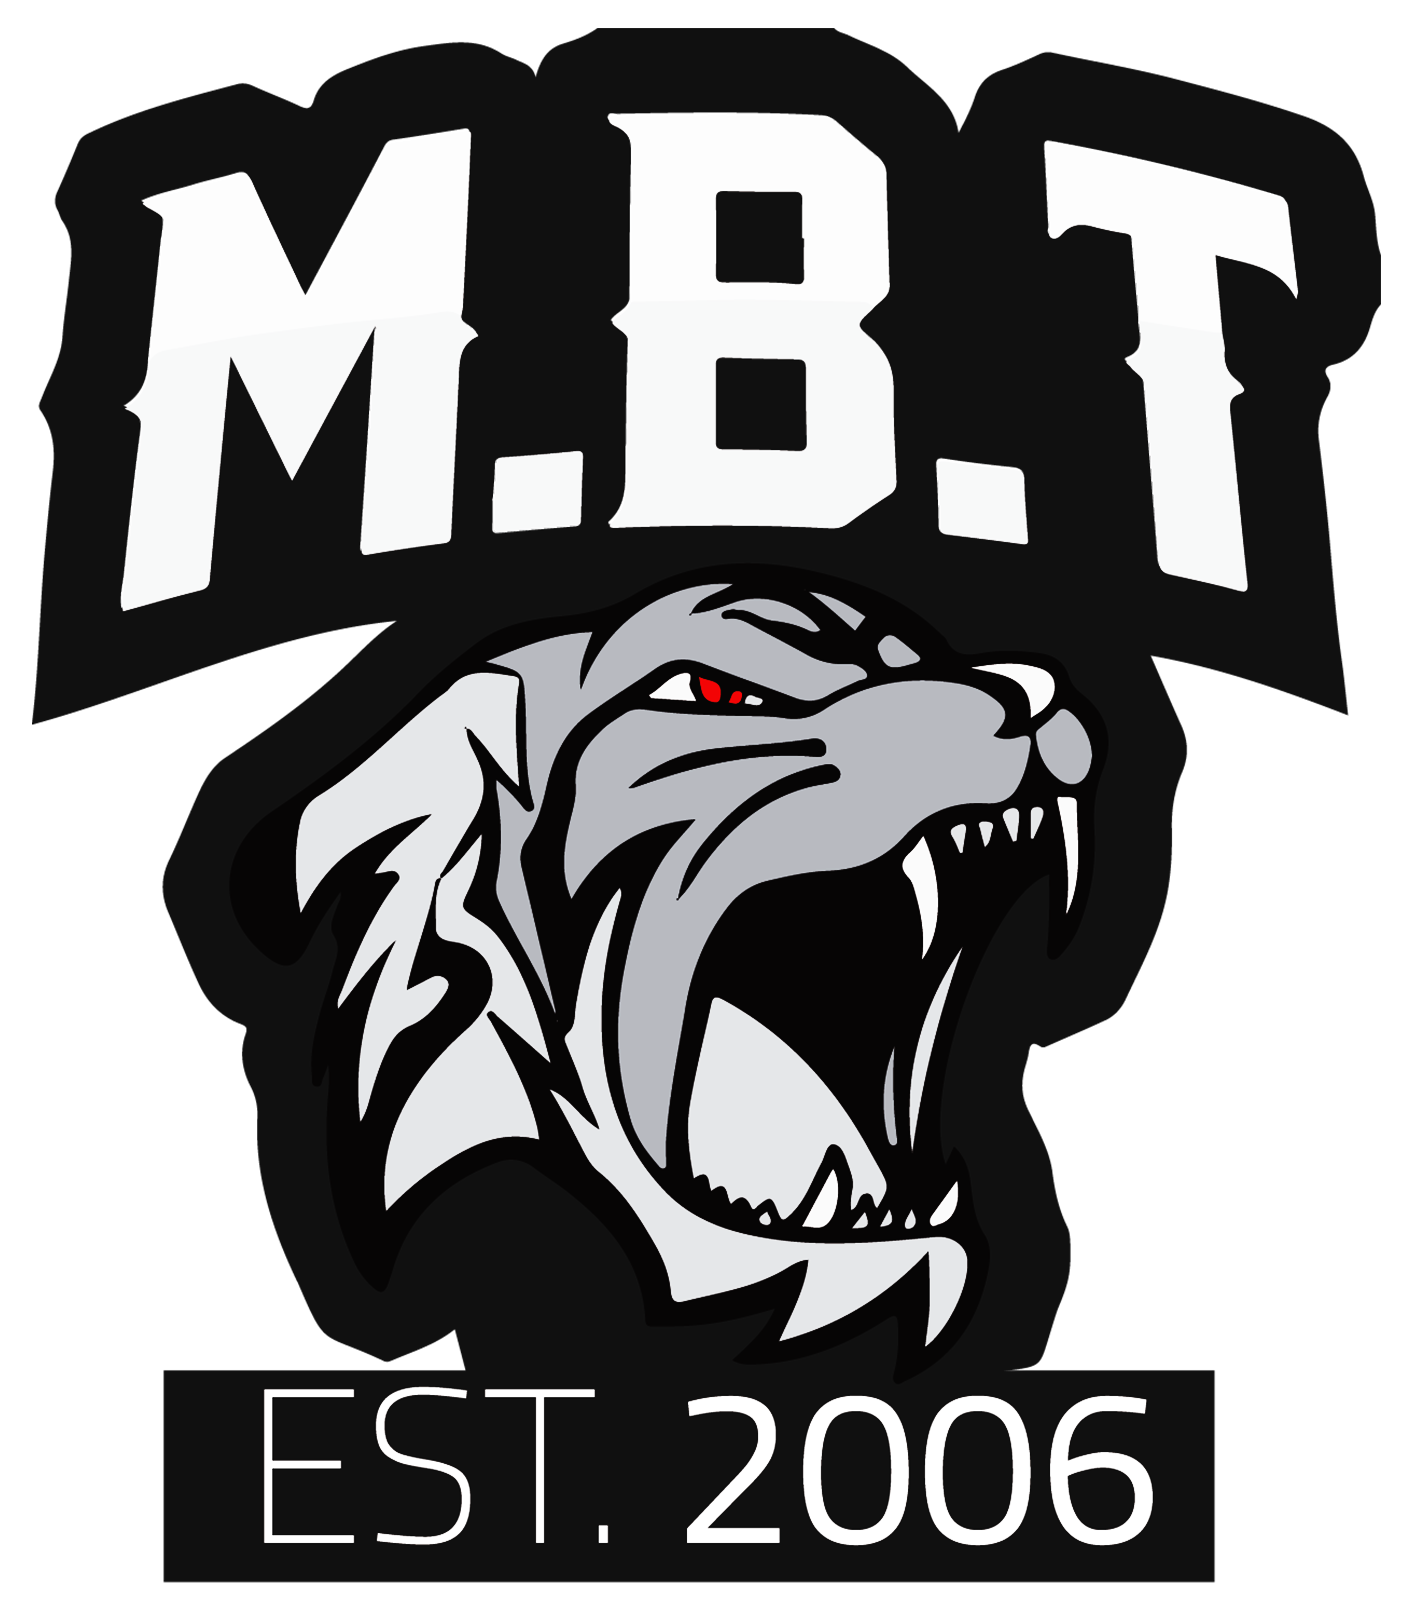 MBT - EST. 2006